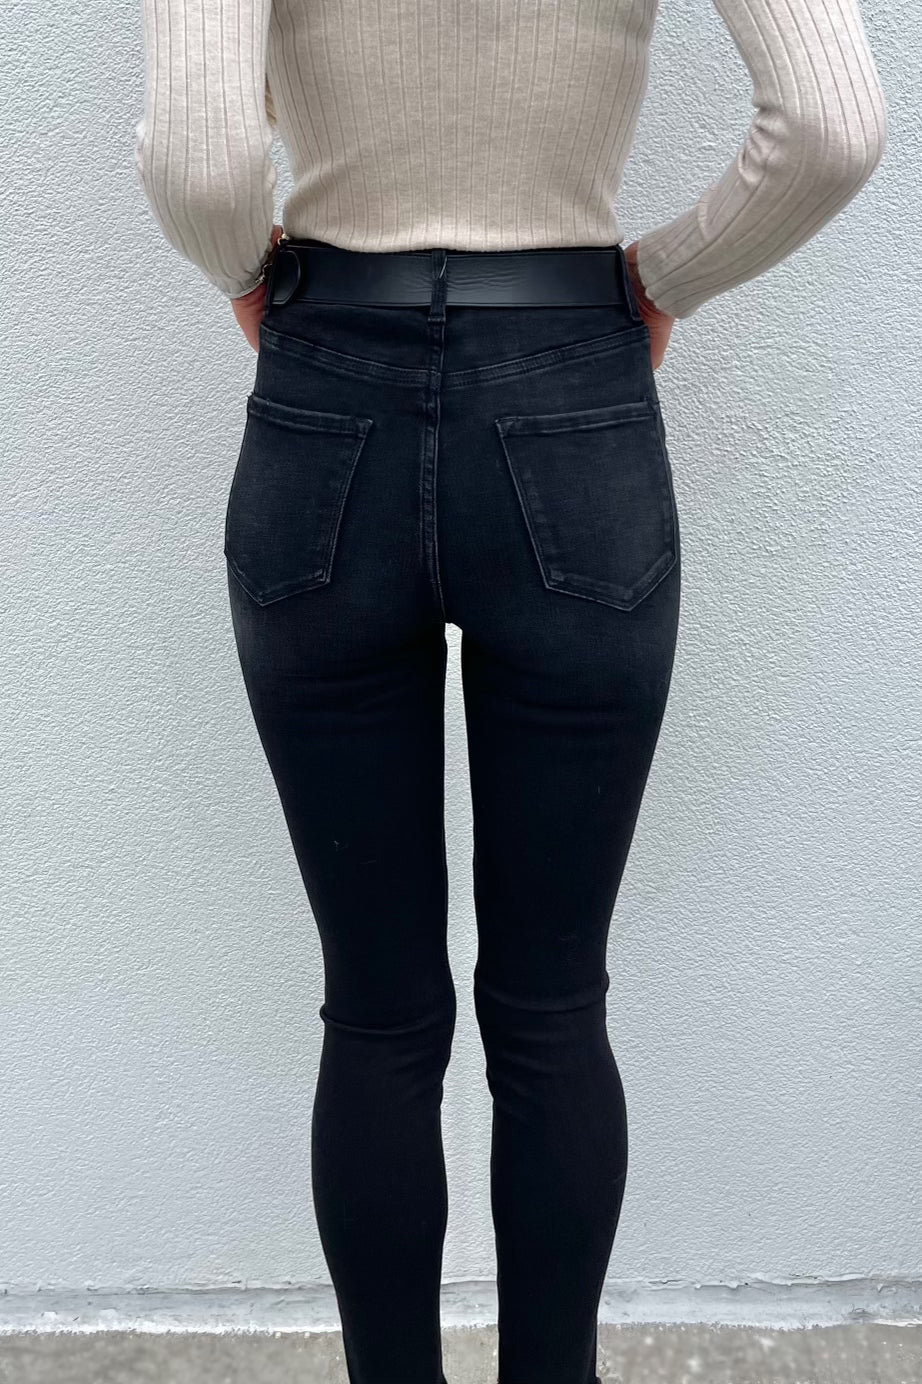 Black Skinny Jeans